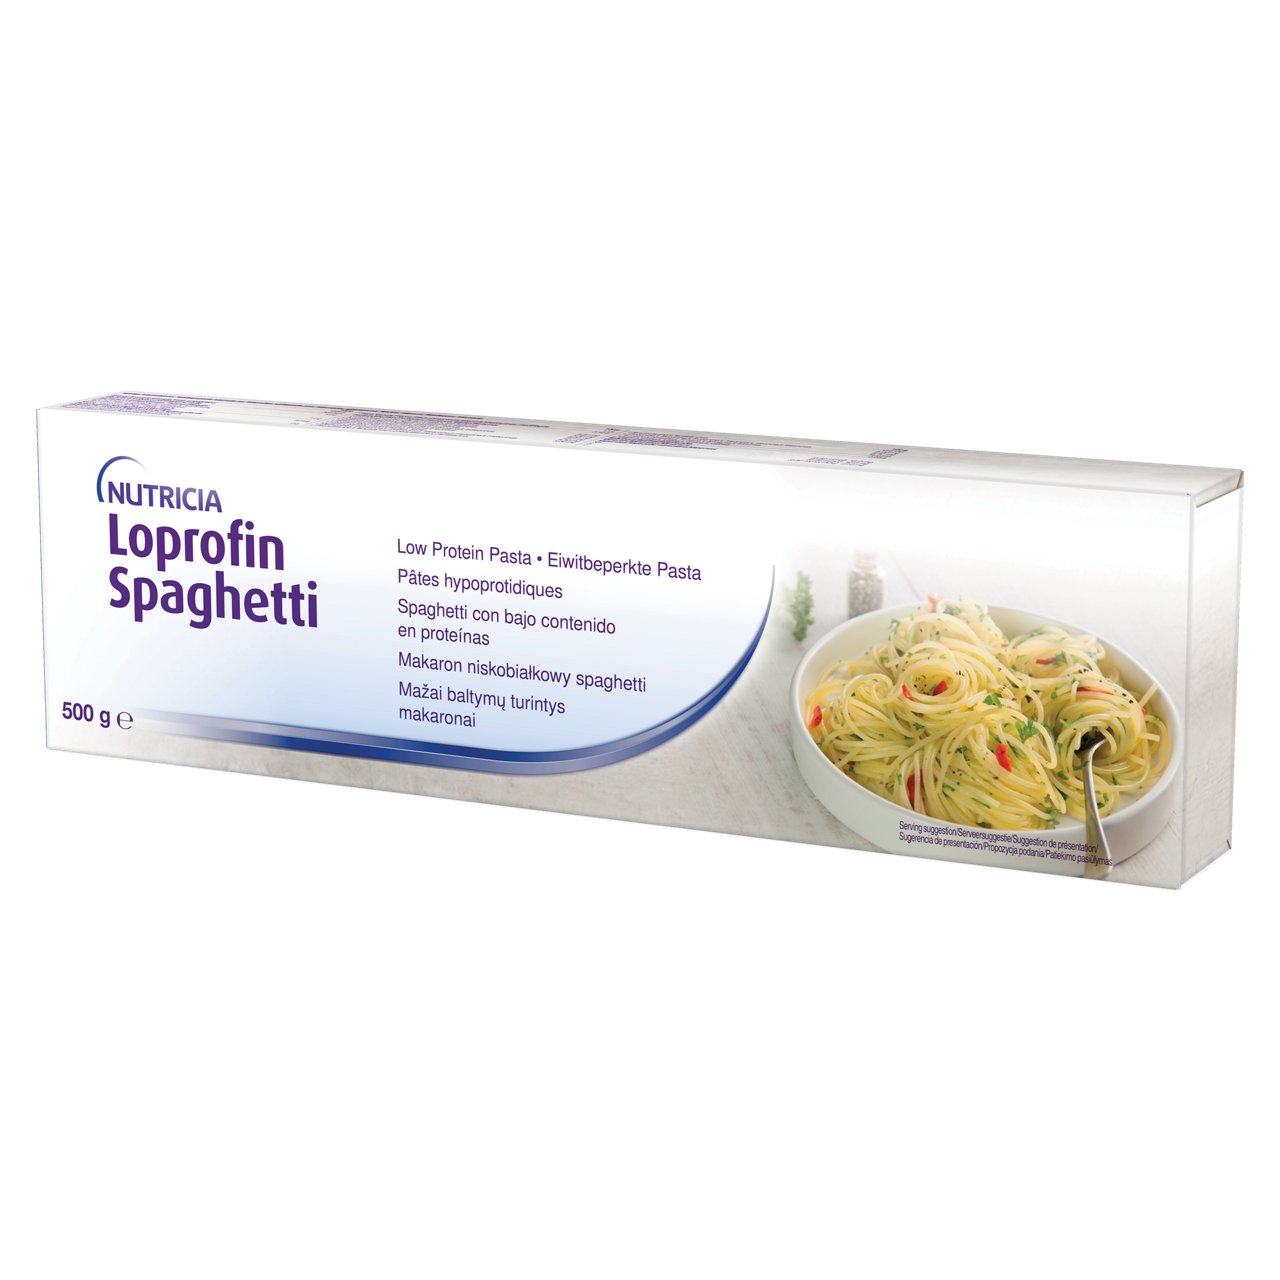 Loprofin Long Spaghetti